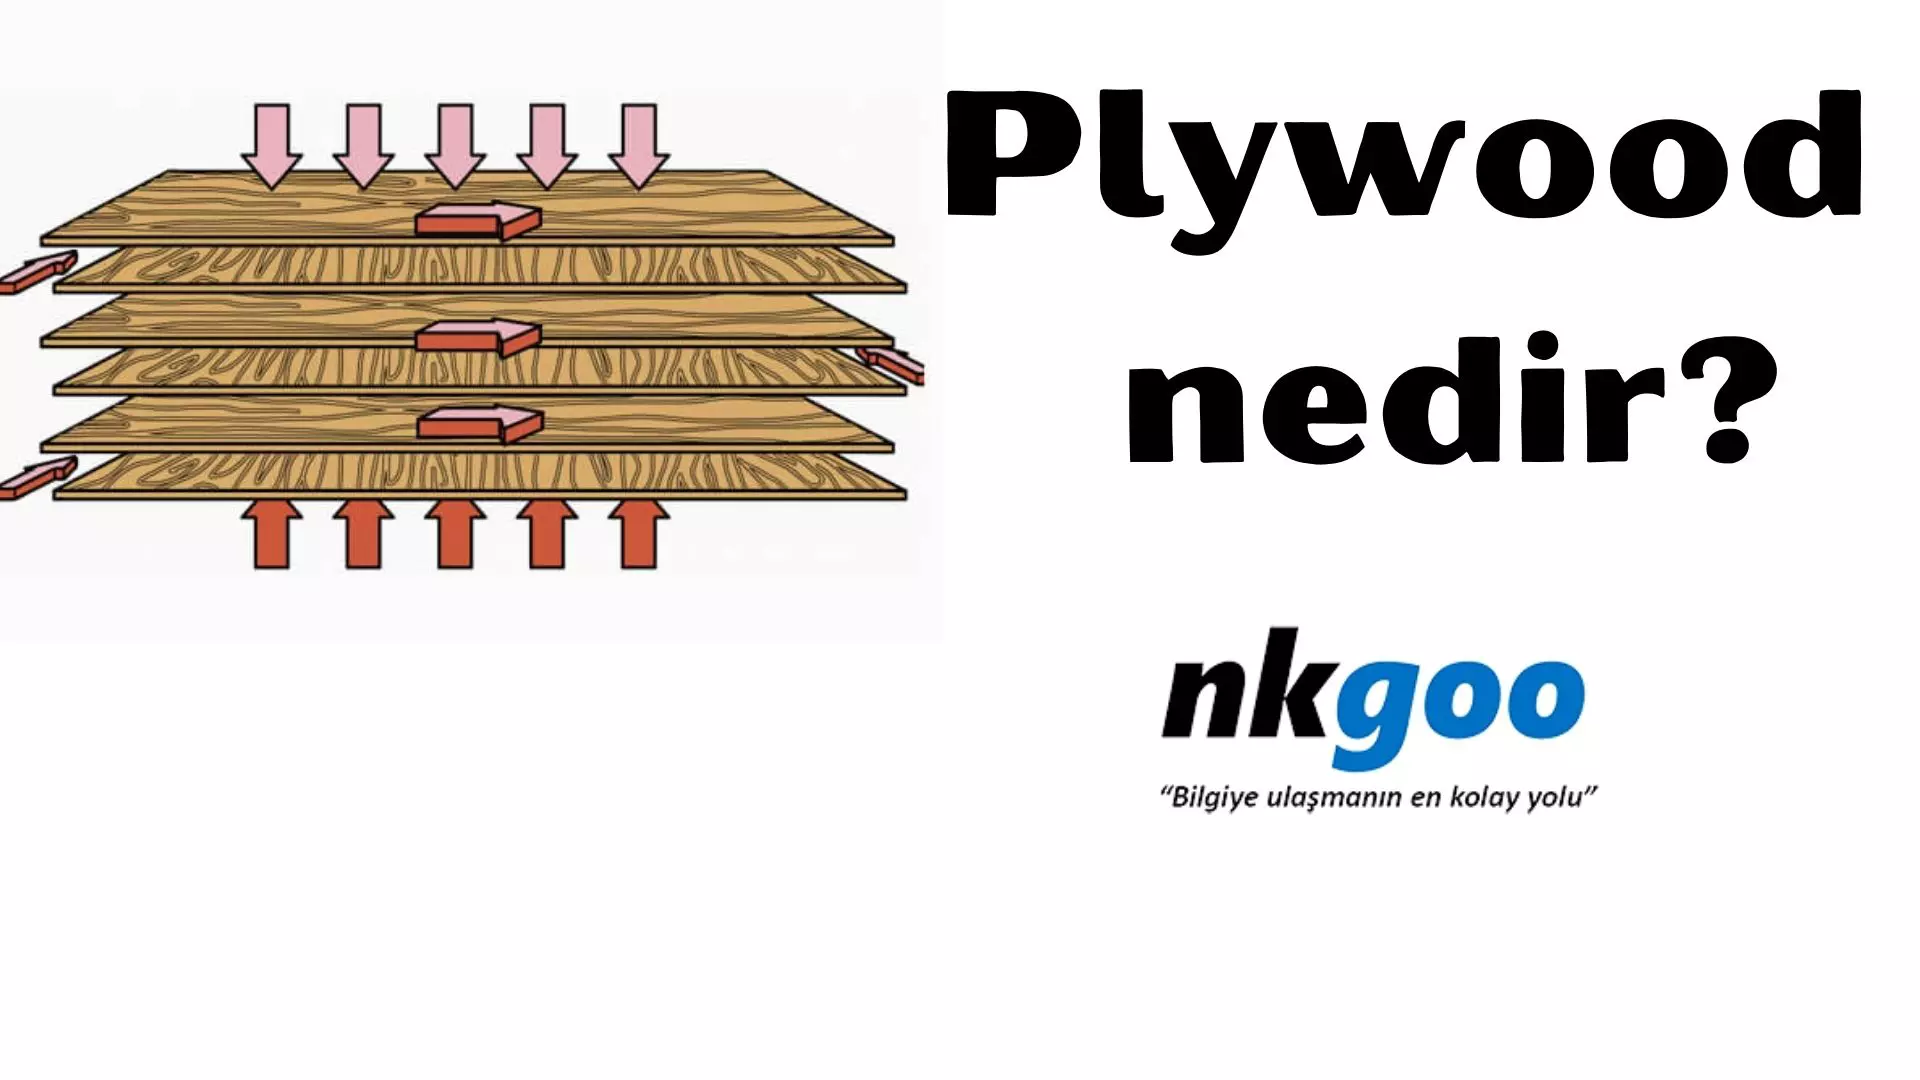 Plywood nedir? 5 temel özelliği, avantajları